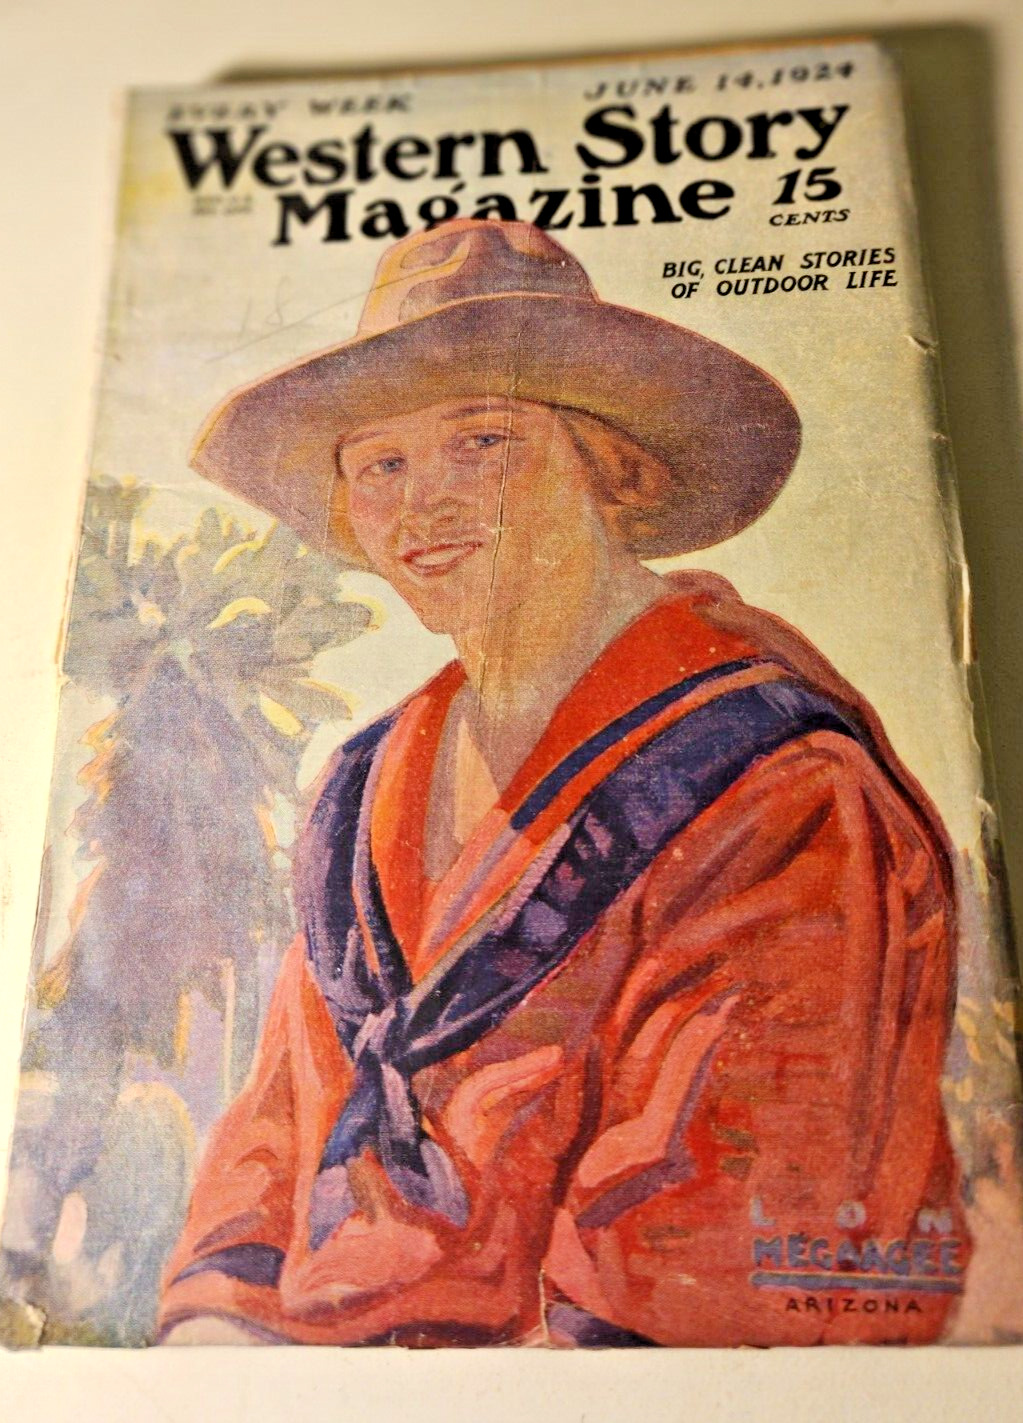 Western Stories June 14, 1924